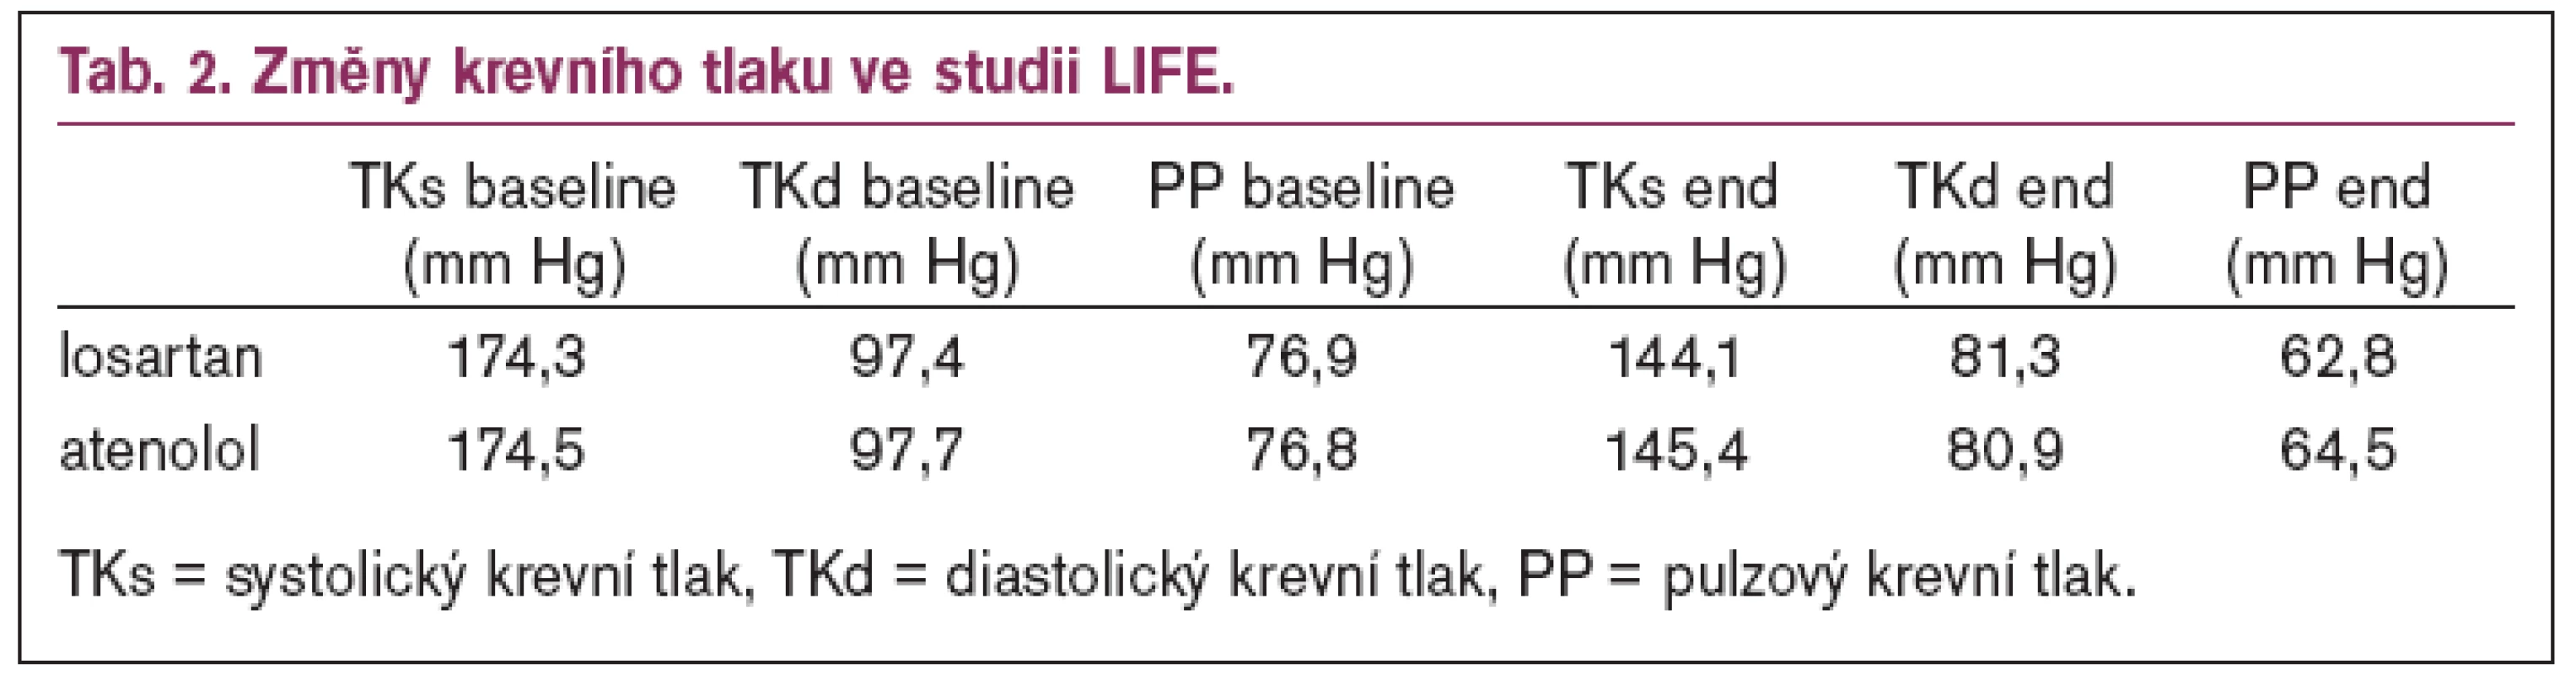 Změny krevního tlaku ve studii LIFE.